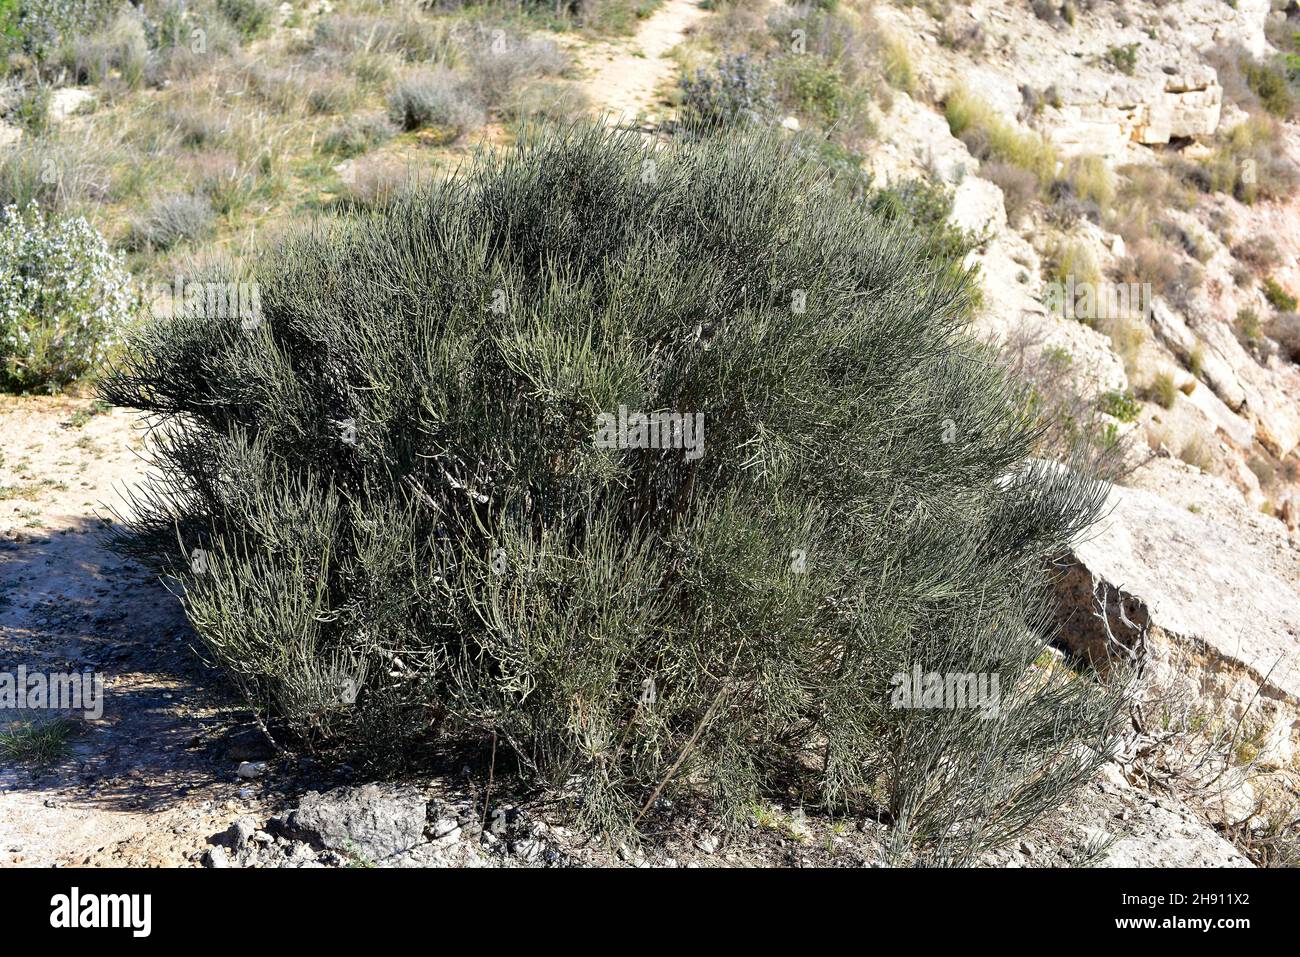 Efedra (Ephedra Major o Ephedra nebrodisis) es un arbusto medicinal nativo de parte de la cuenca mediterránea y del oeste de Asia. Esta foto fue tomada en Foto de stock